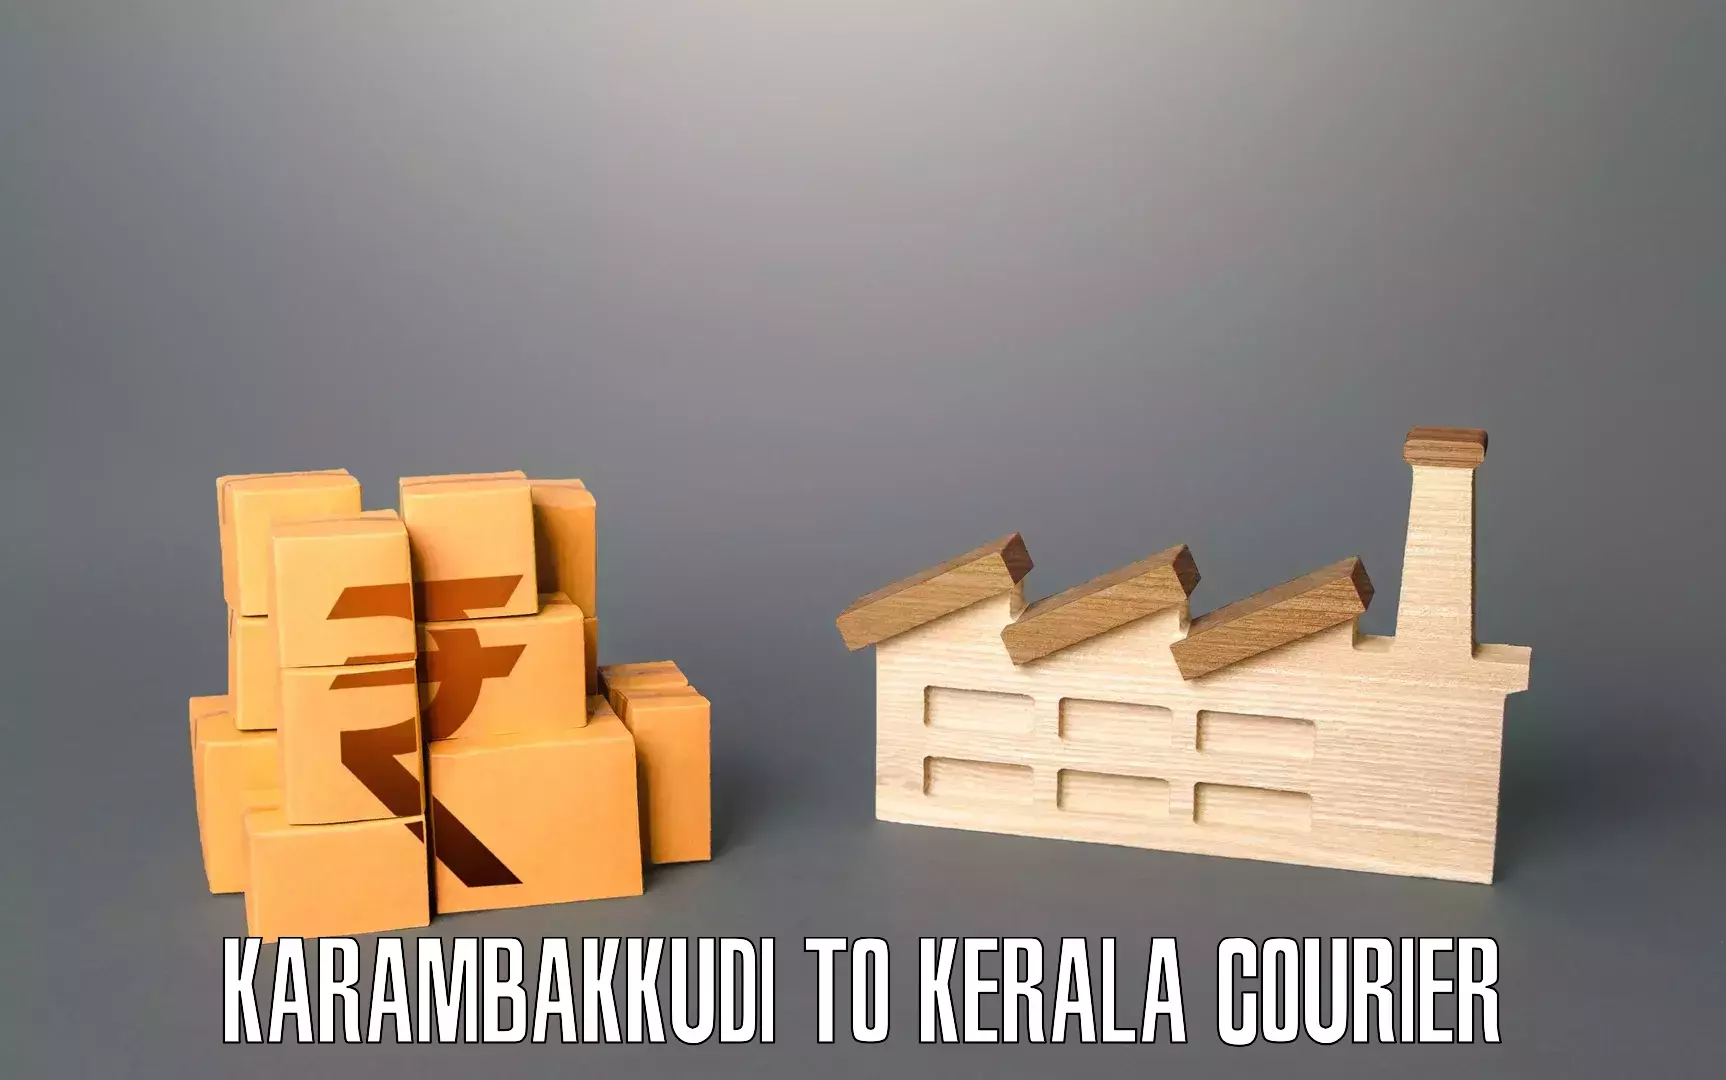 Professional home movers Karambakkudi to Kerala